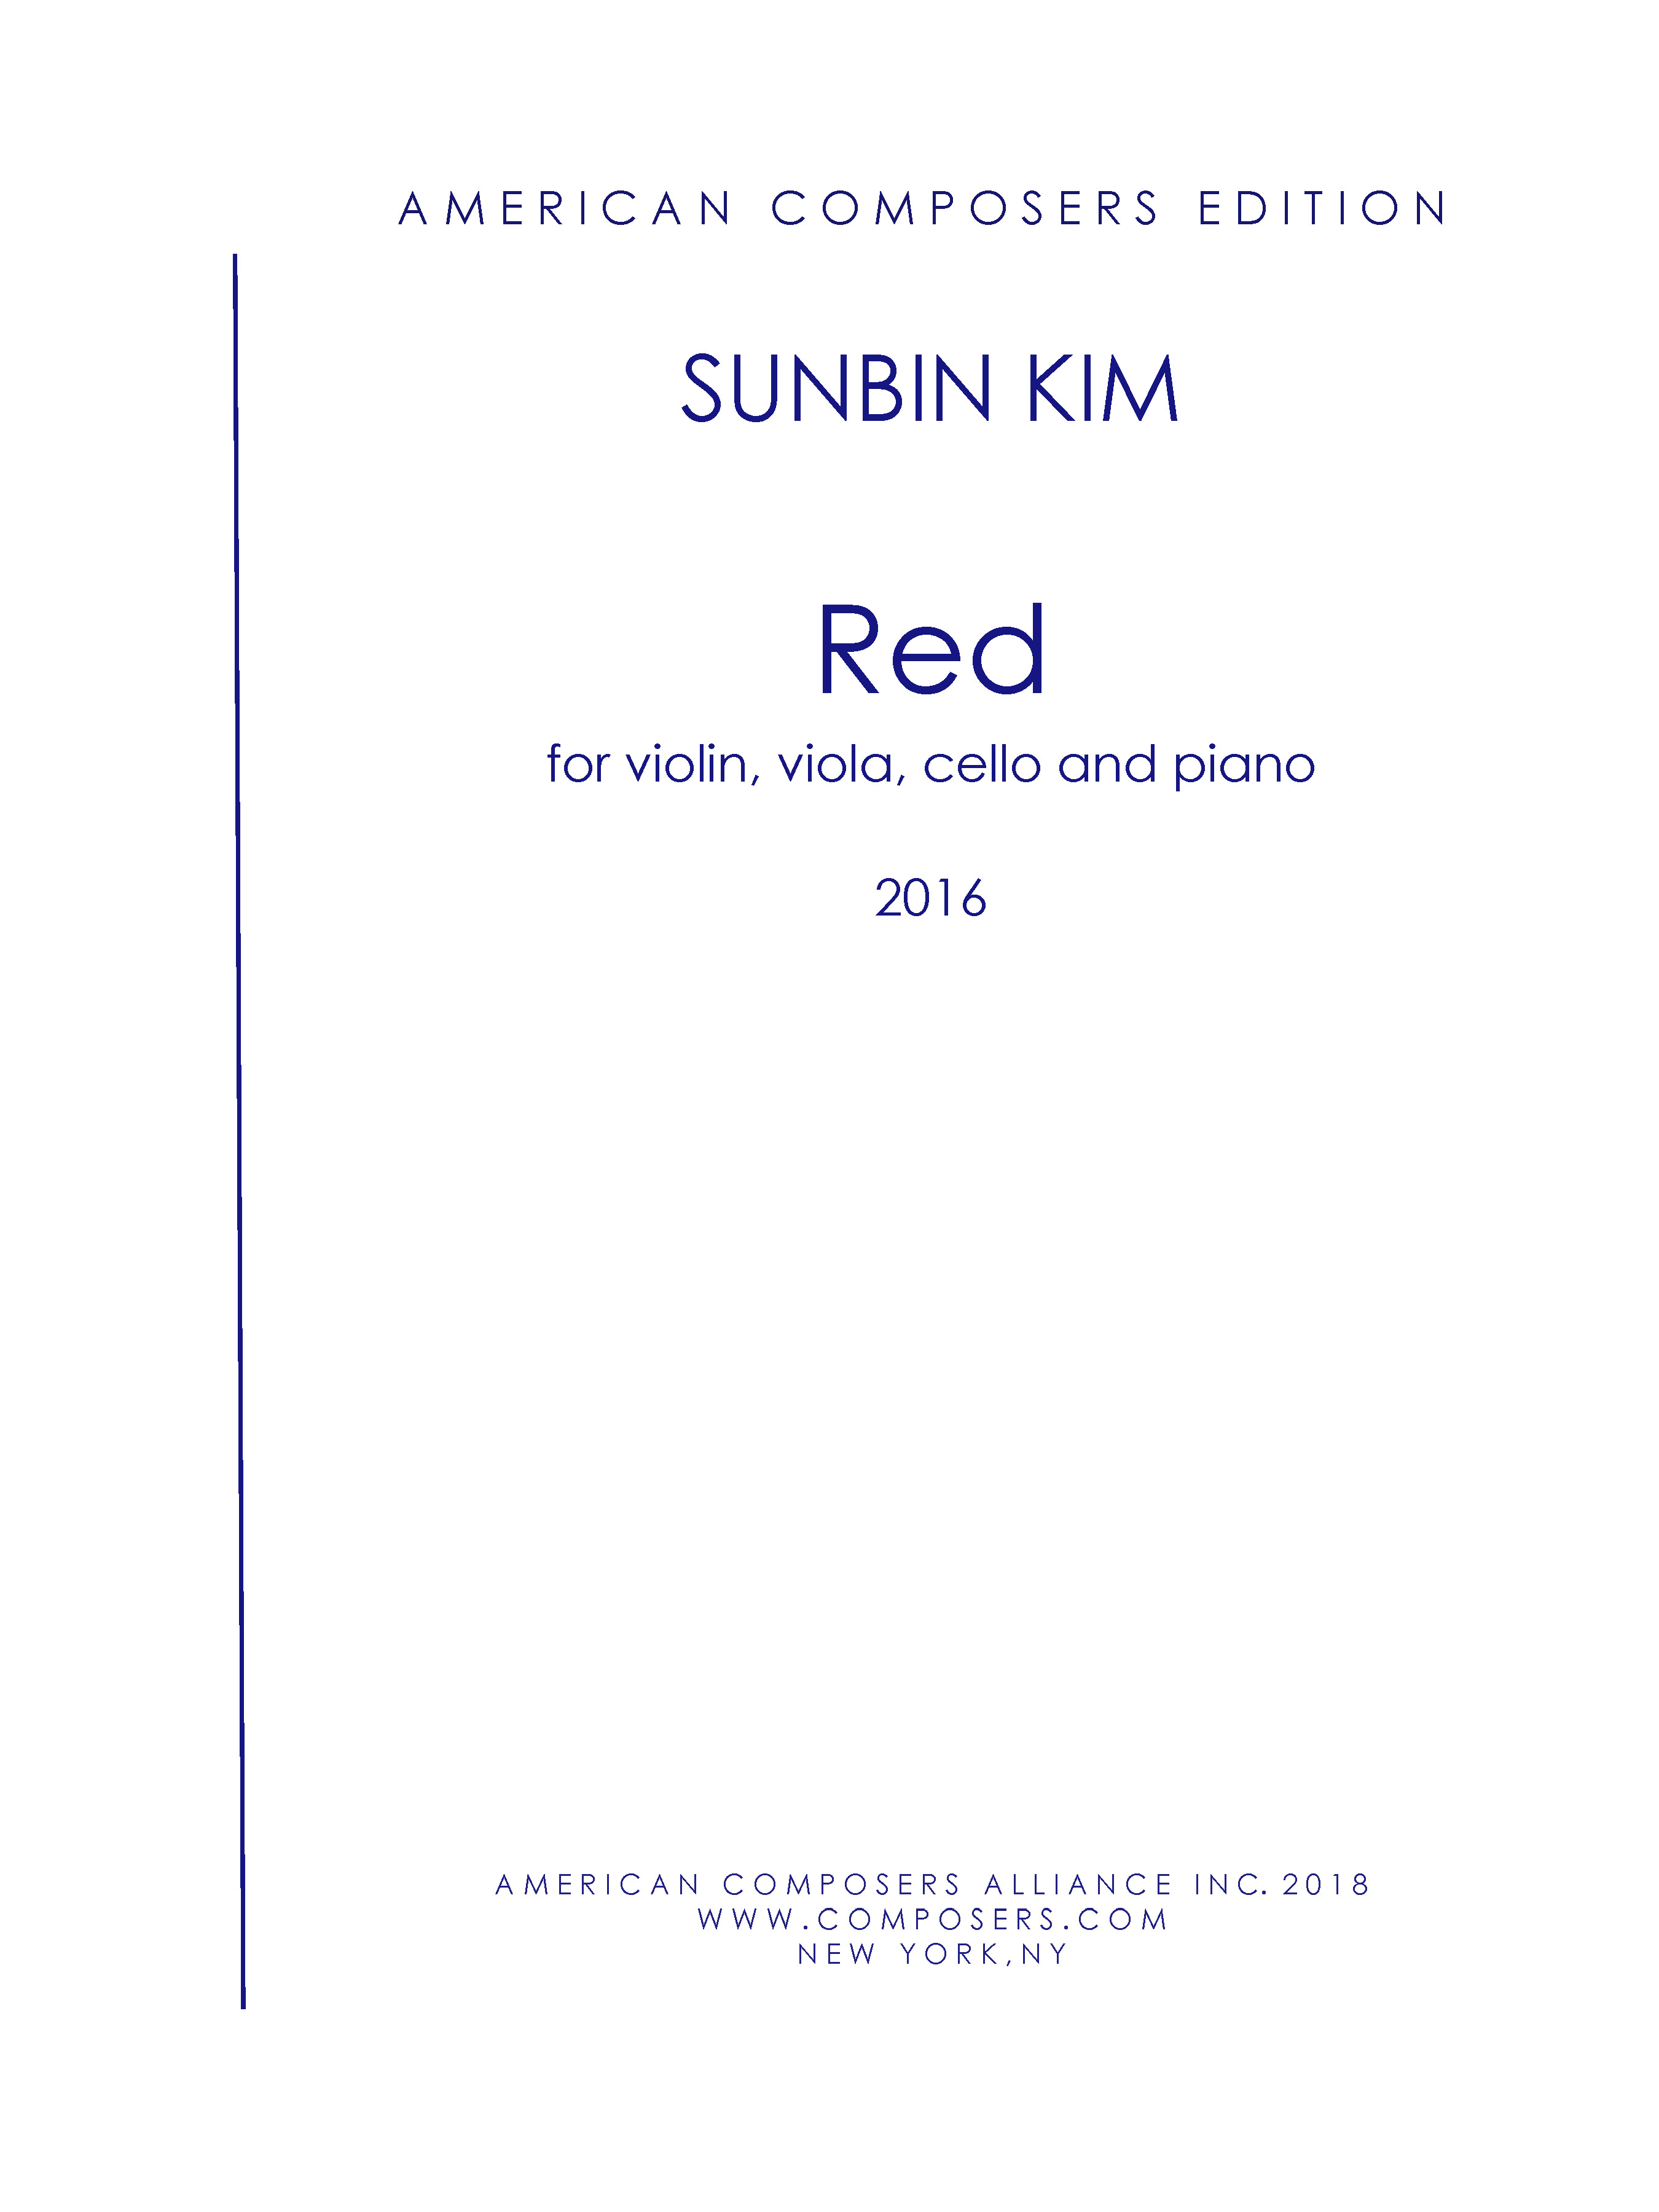 Red : For Violin, Viola, Cello and Piano (2016).